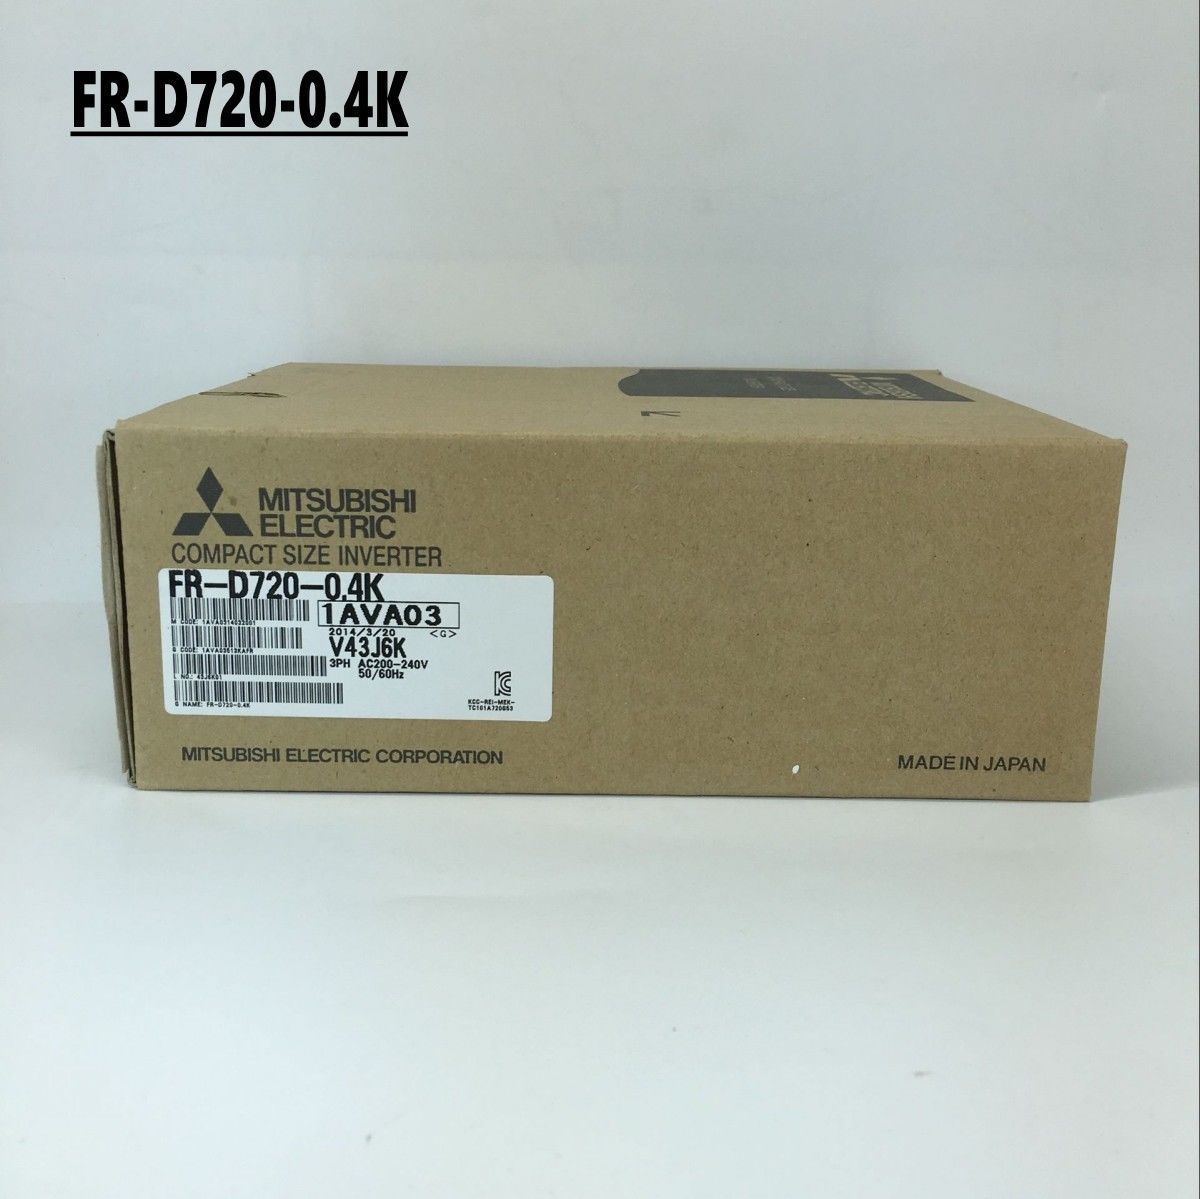 New MITSUBISHI Inverter FR-D720-0.4K IN BOX FRD720 0.4K - zum Schließen ins Bild klicken